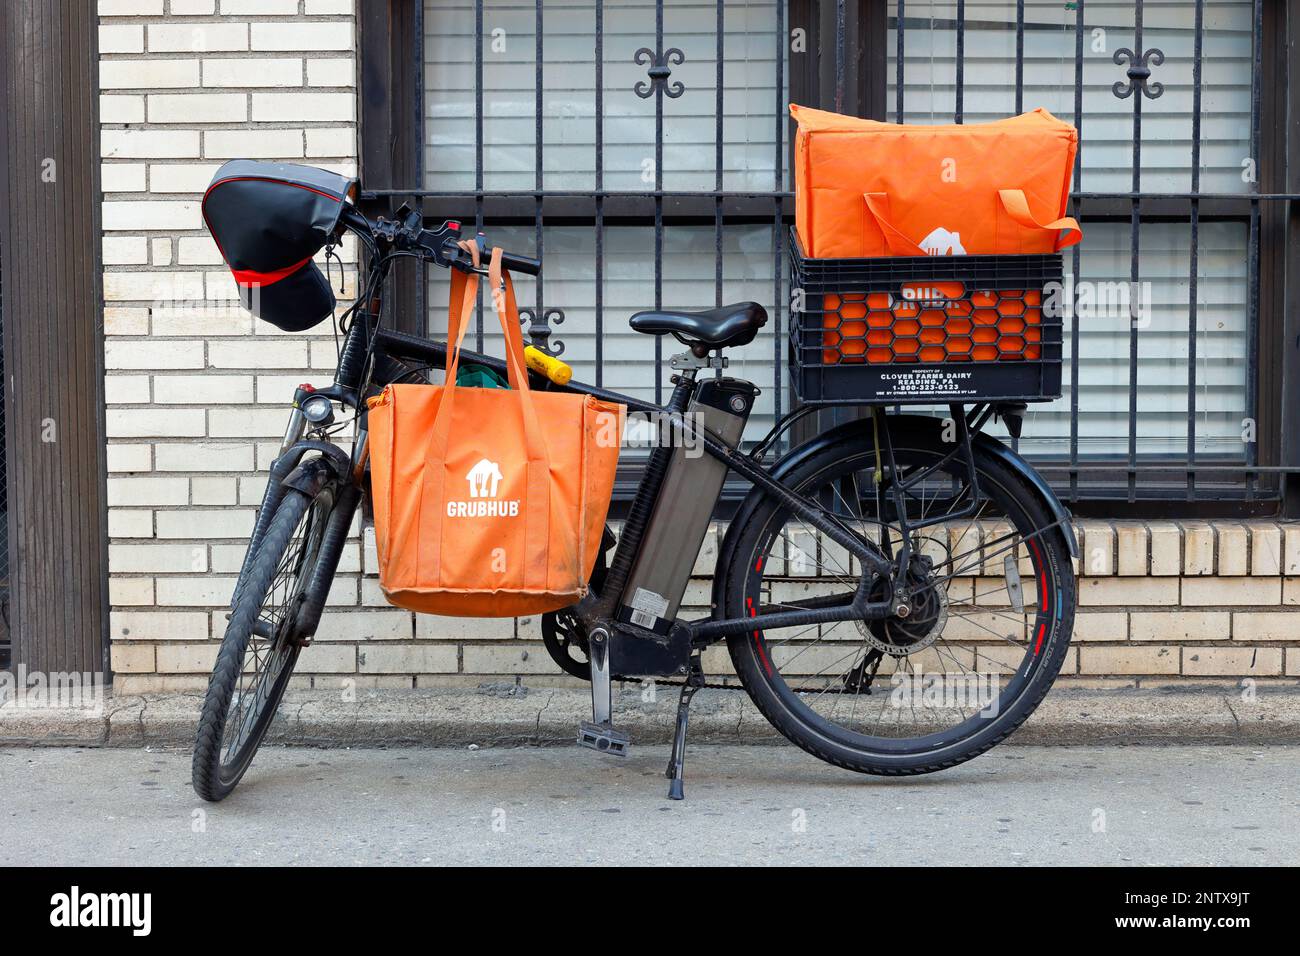 Un e bike équipé d'une batterie électrique et de sacs thermiques de livraison de nourriture Grubhub, à l'extérieur d'un bâtiment à New York. Banque D'Images